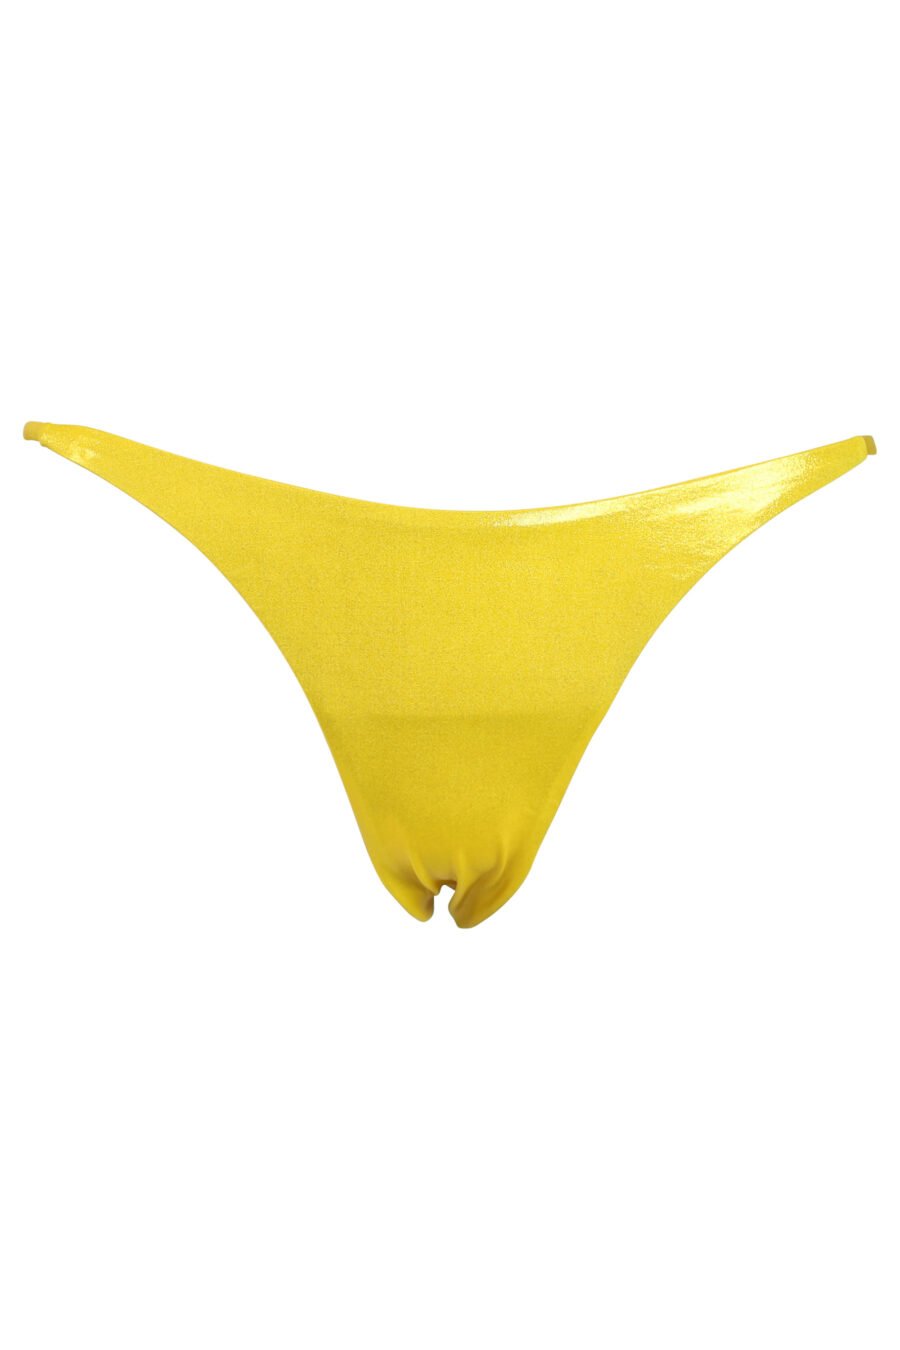 Braguita de bikini amarillo brillante con lazo lateral - 889316269680